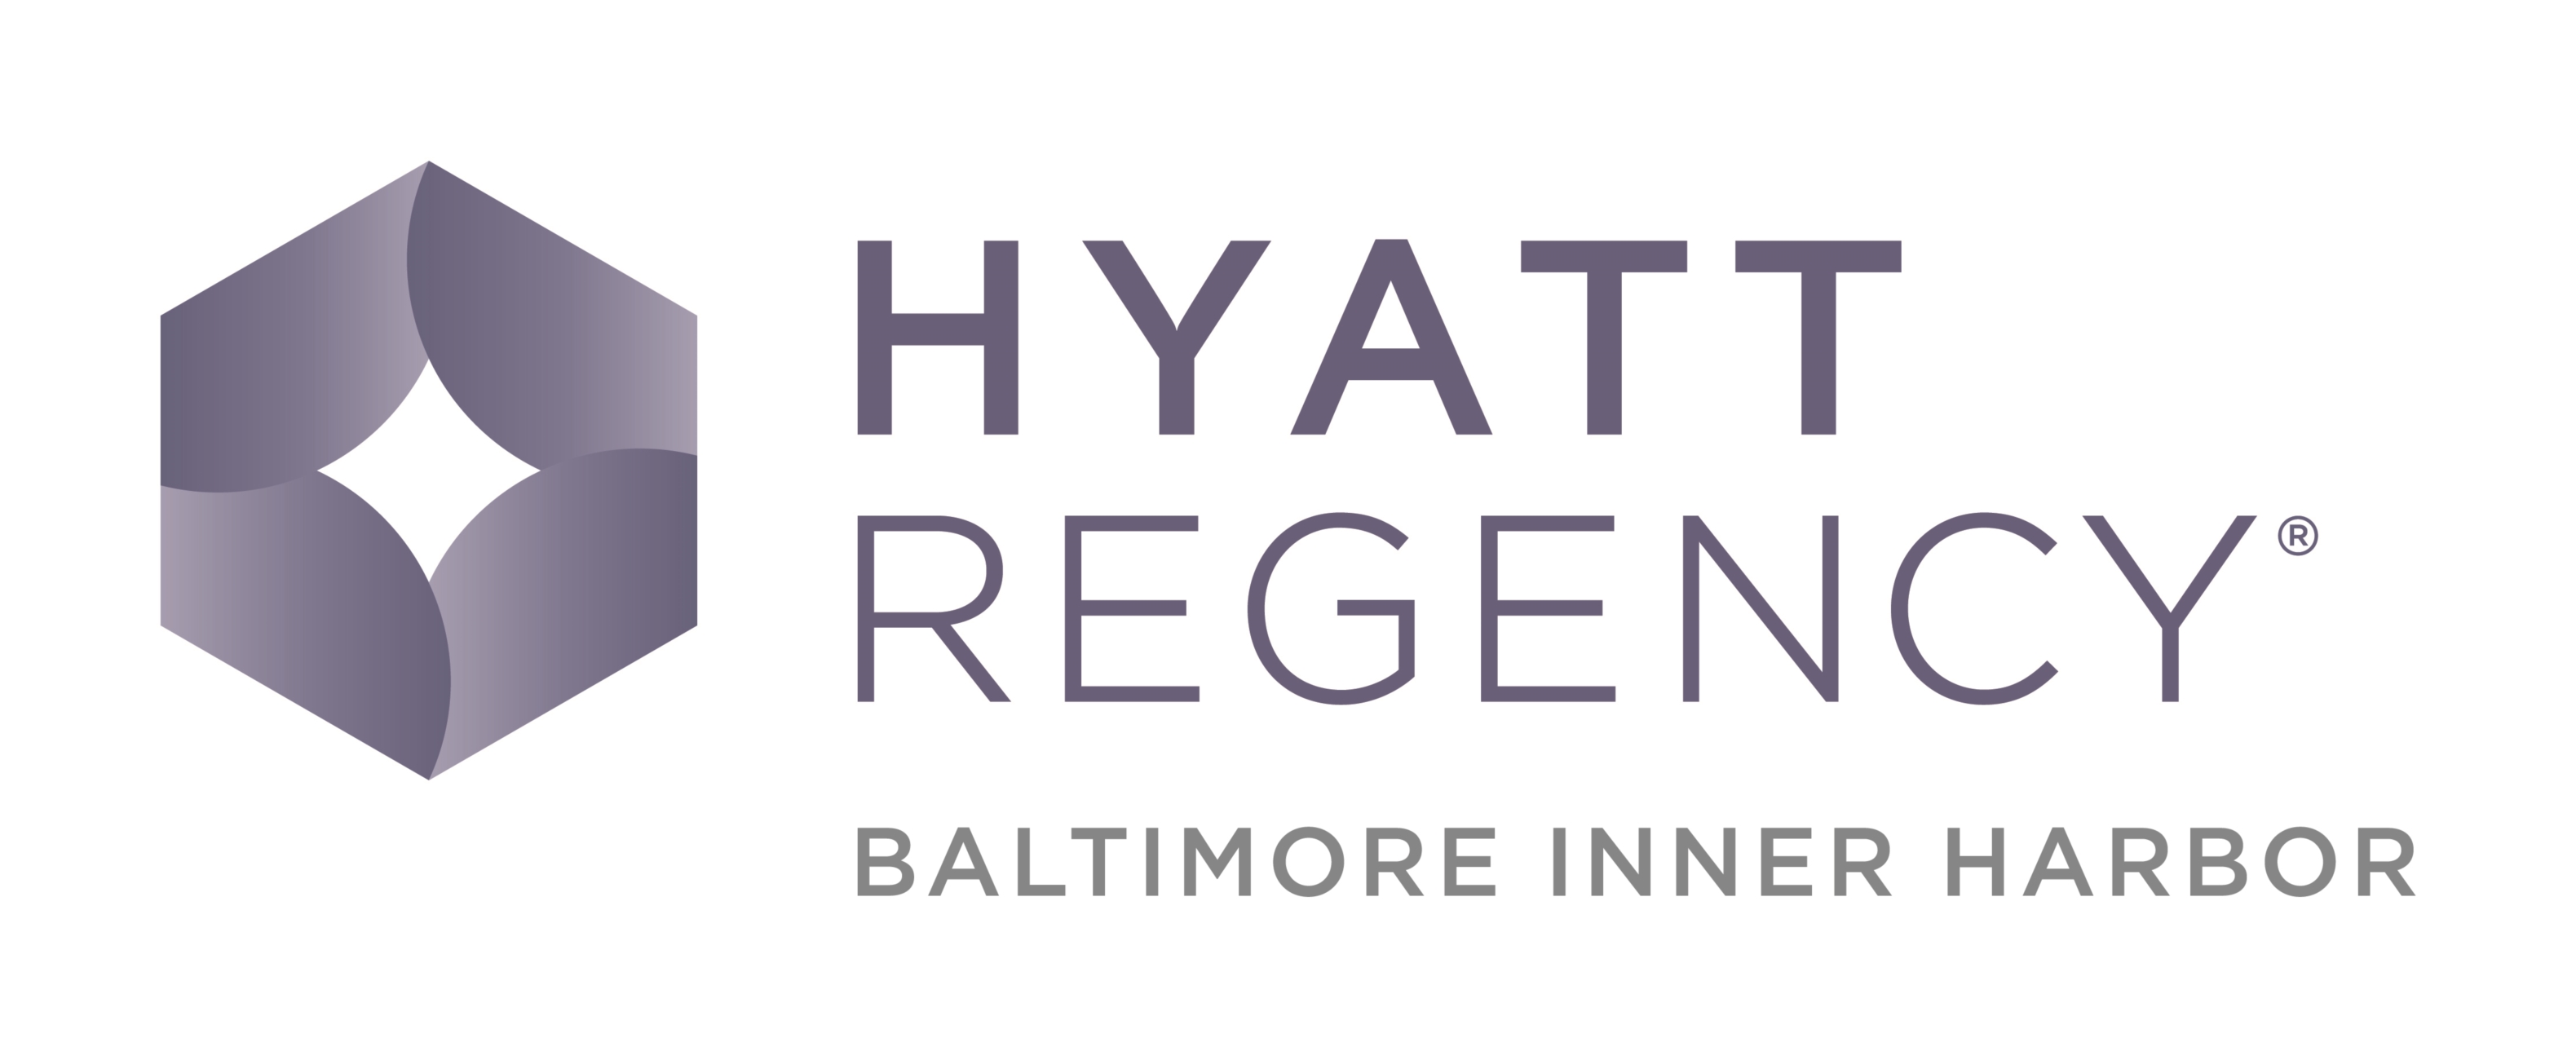 Hyatt Regency Baltimore Inner Harbor Company Logo